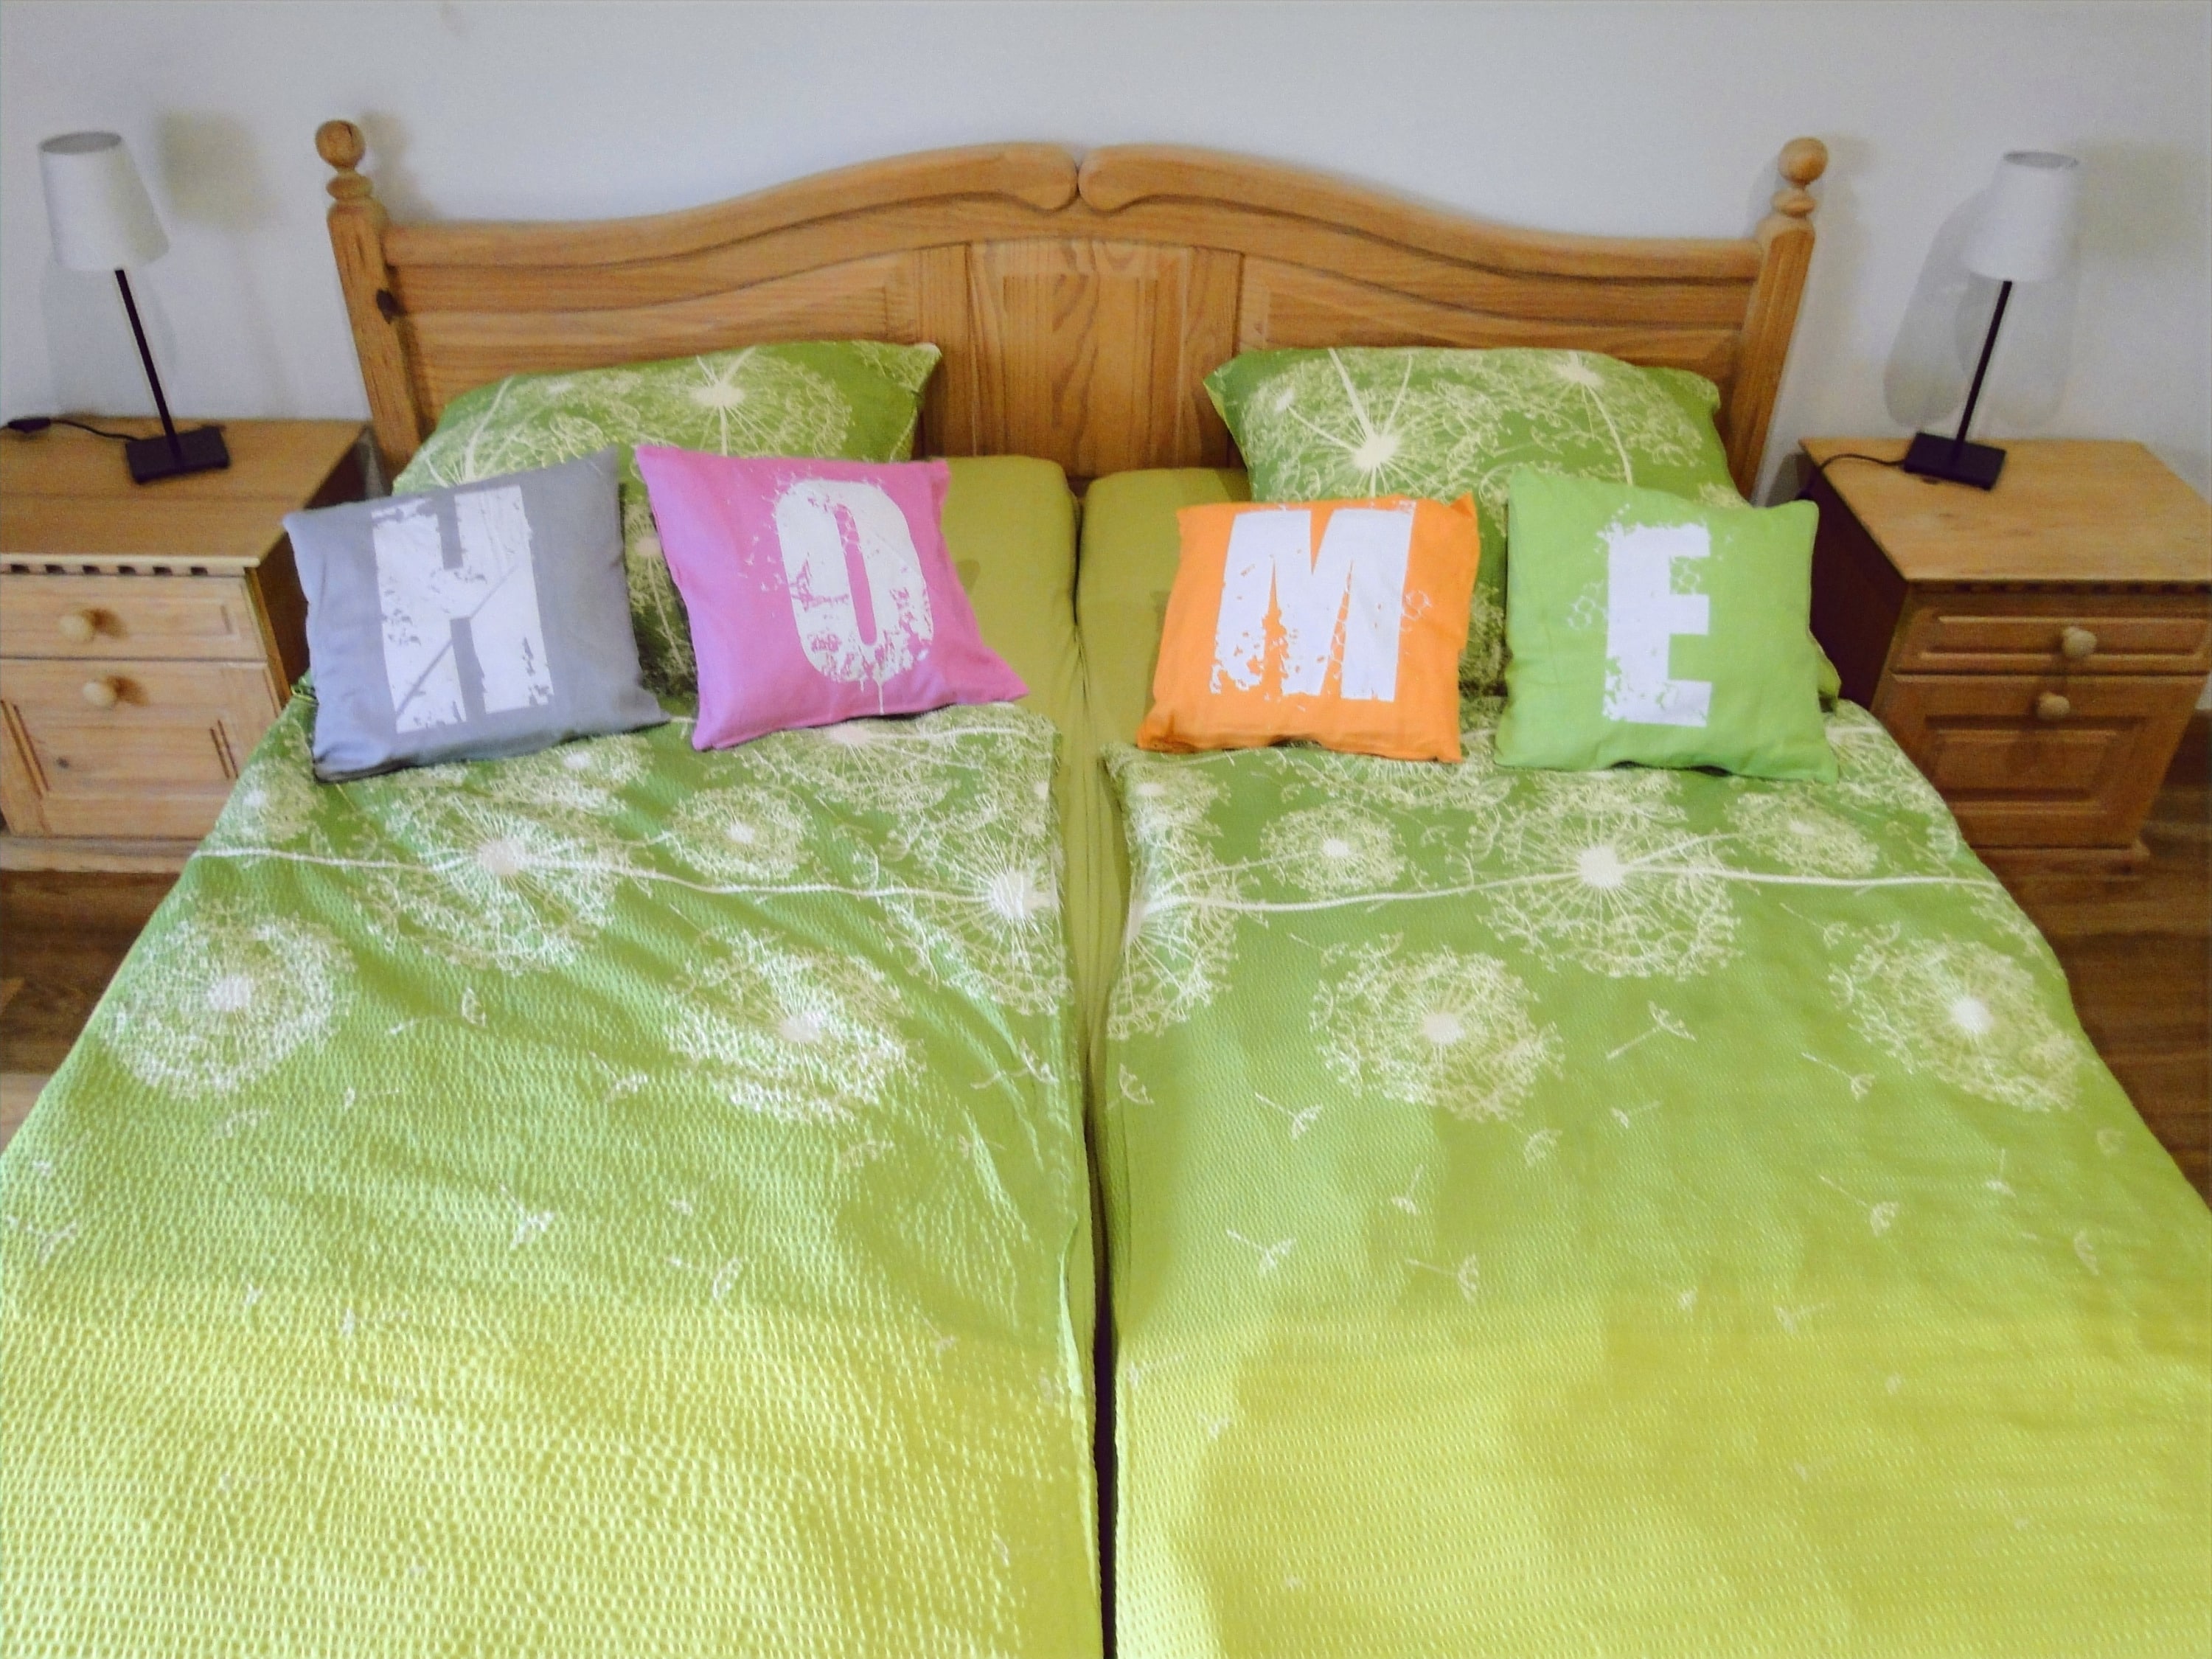 Doppelbett mit Buchstabenkissen, die das Wort "HOME" bilden